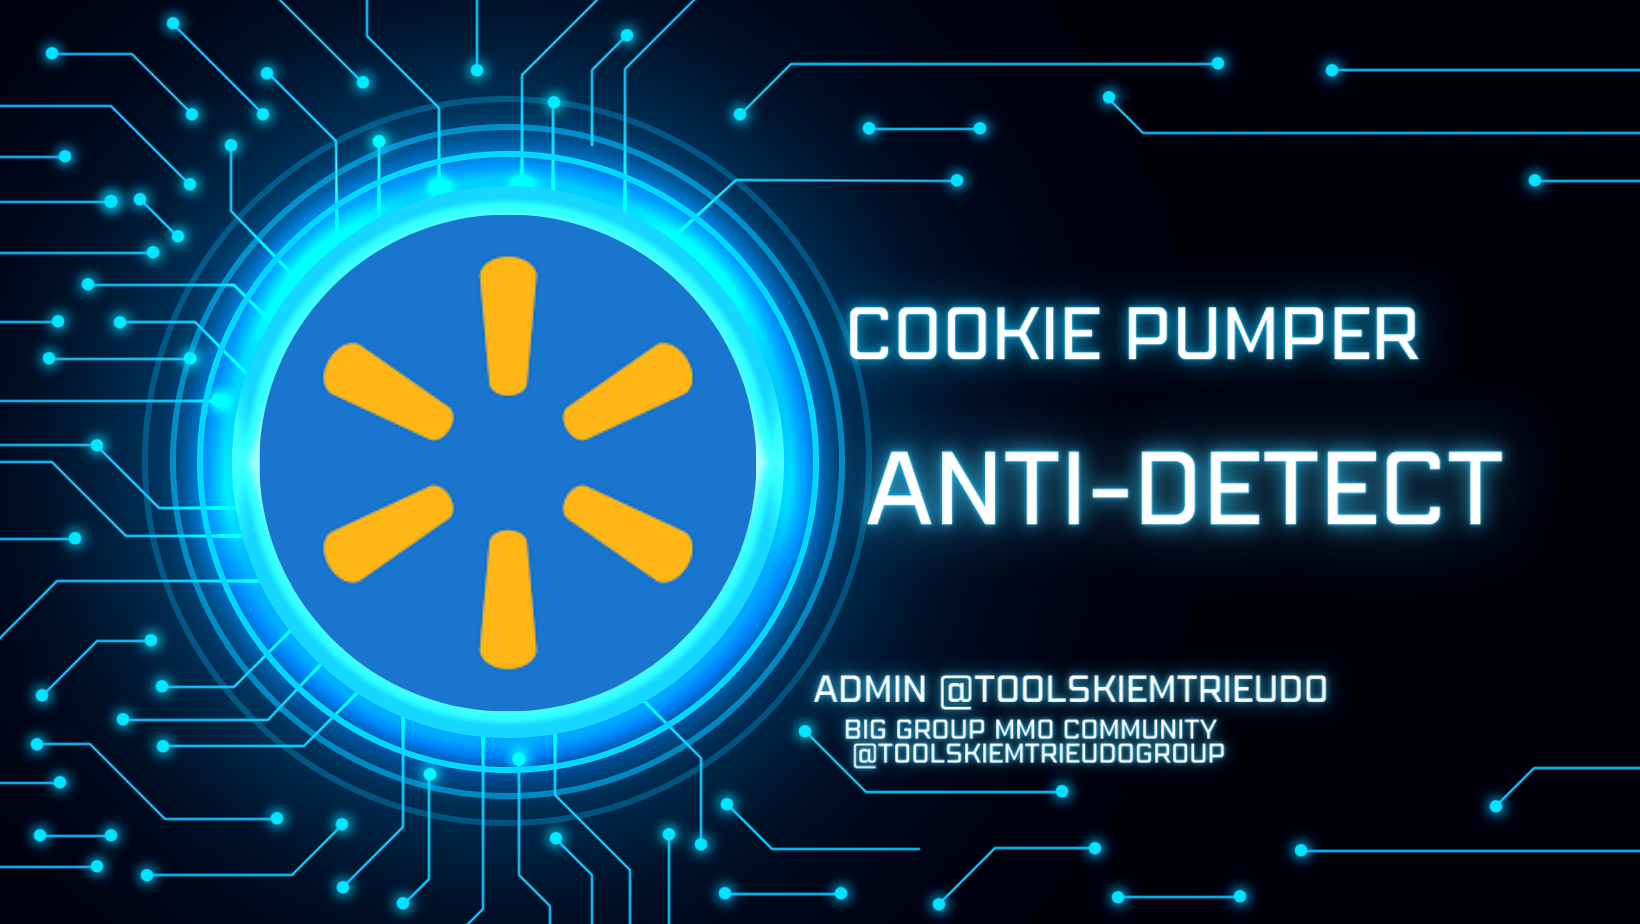 Công cụ nuôi tài khoản Walmart trên antidetect vektor t13 như người dùng thật- Walmart cookie Pumper on antidetect vektor t13 Automation like a human